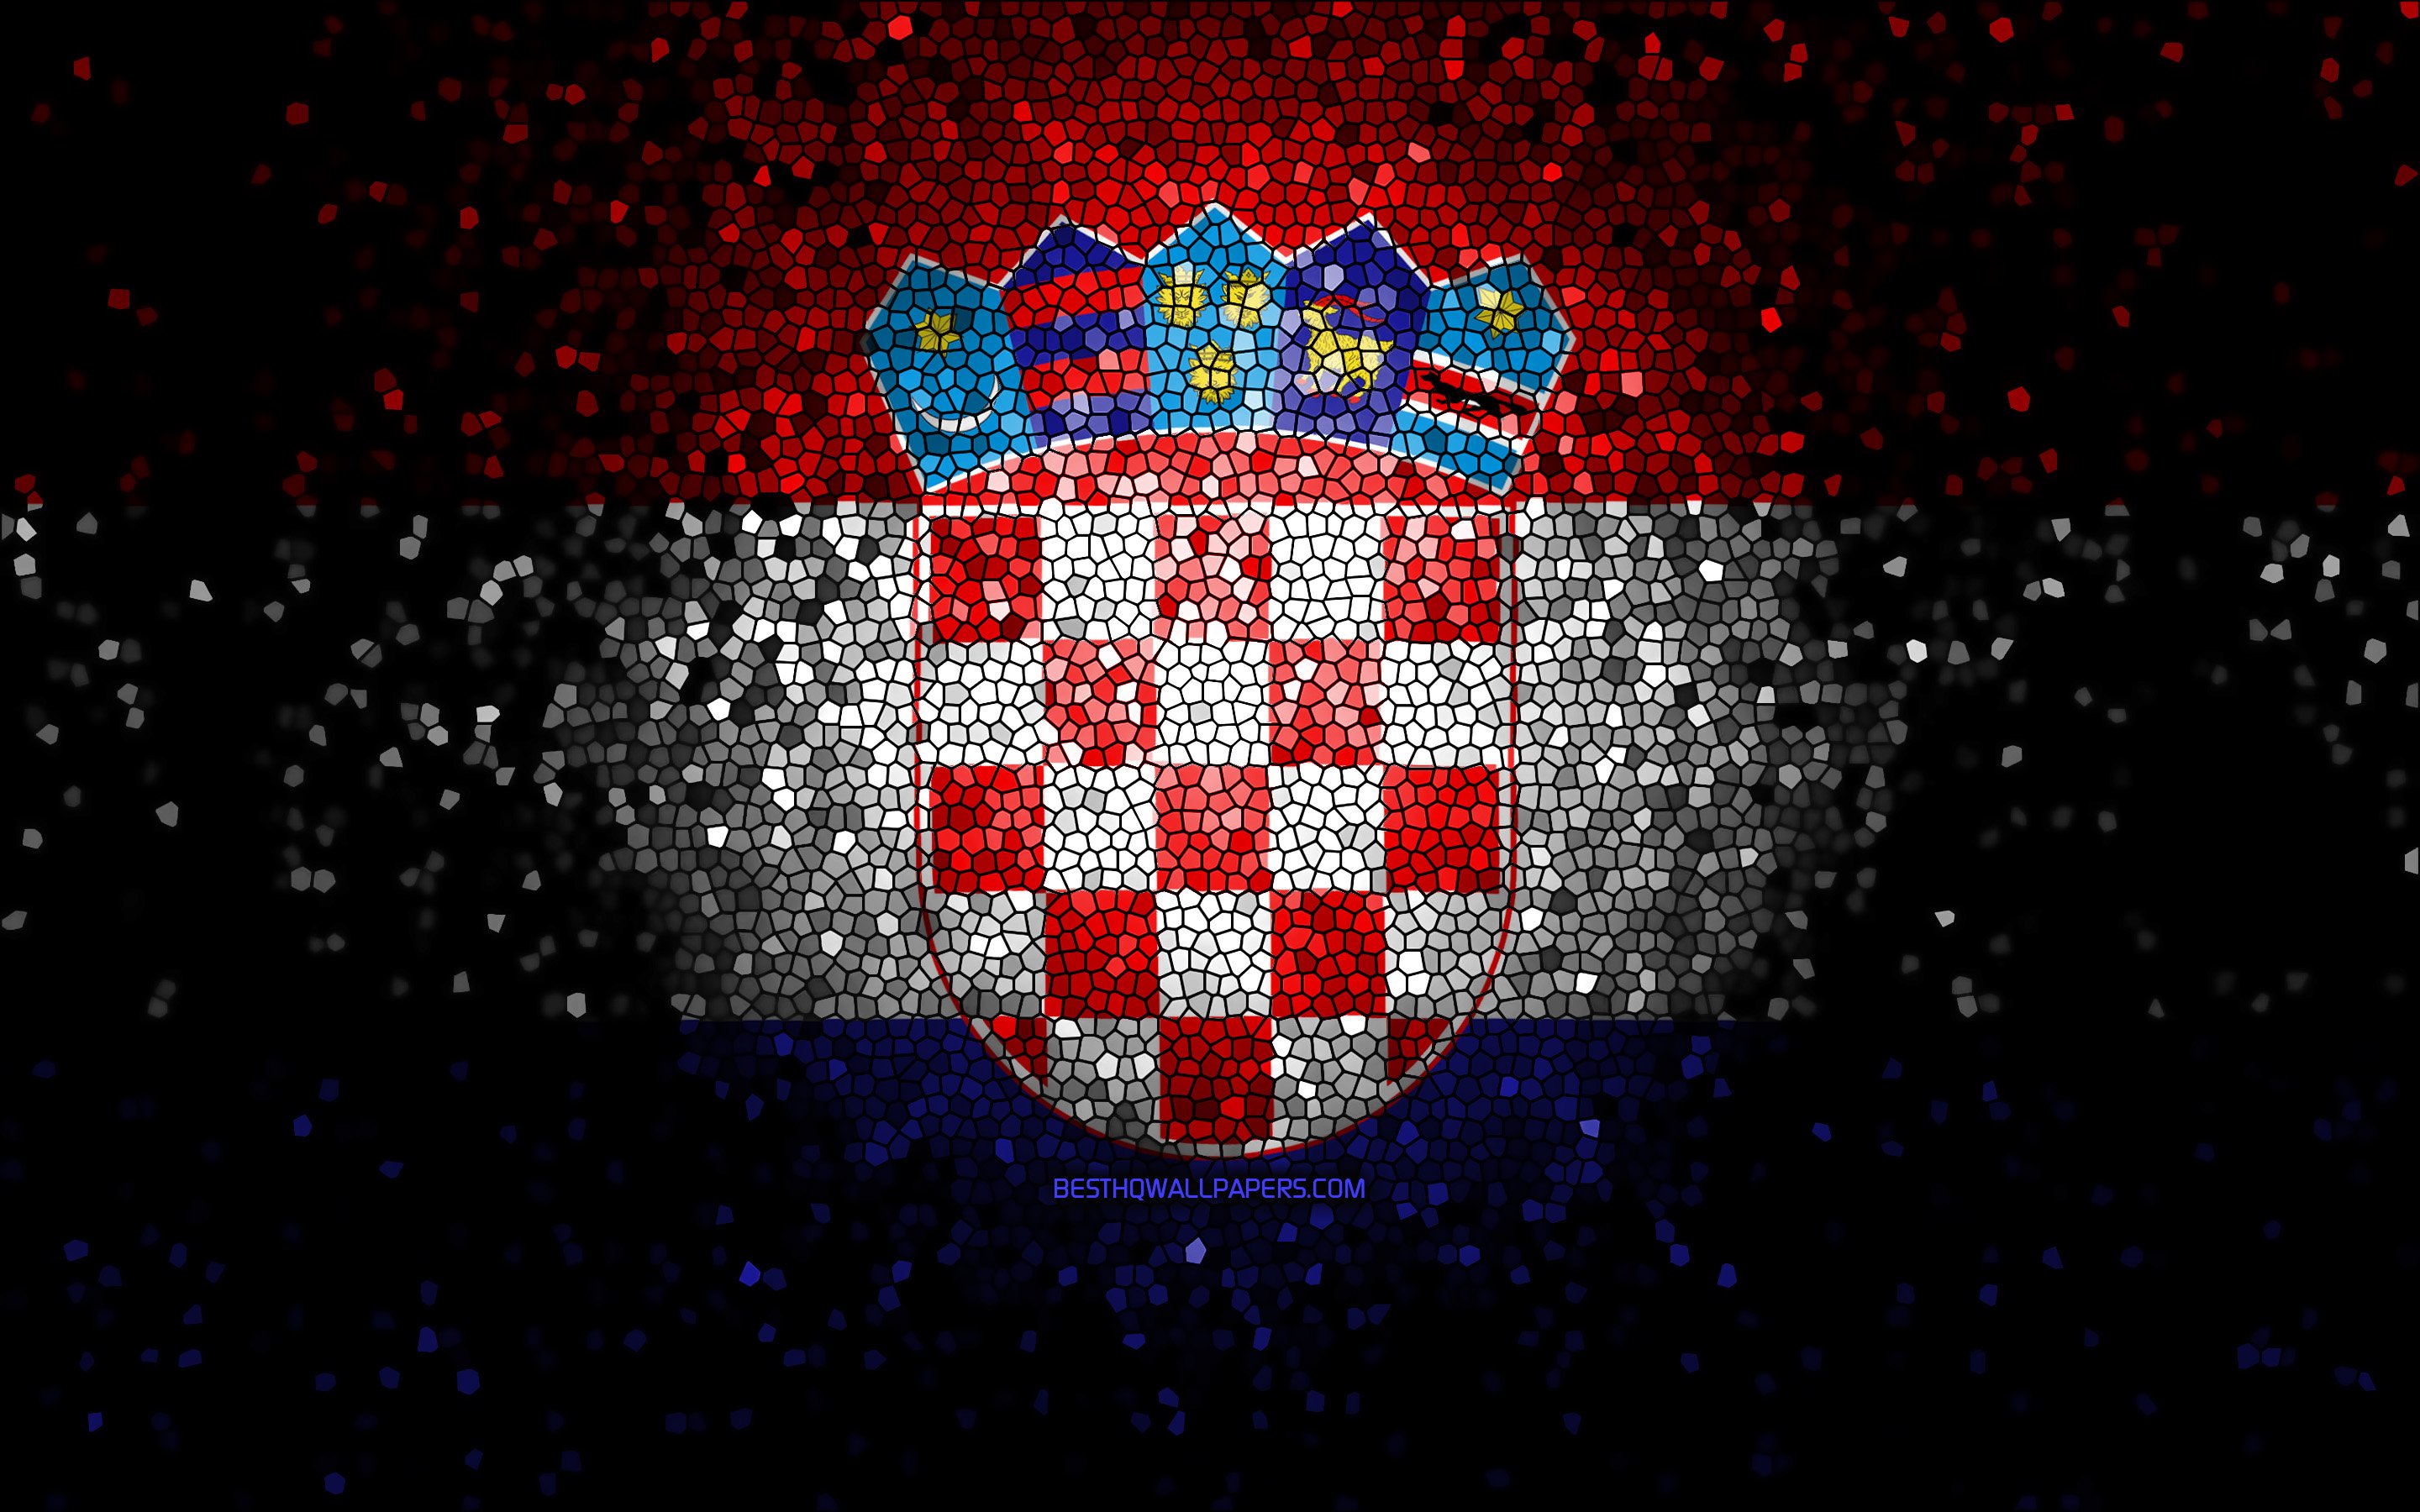 хорватия флаг и герб